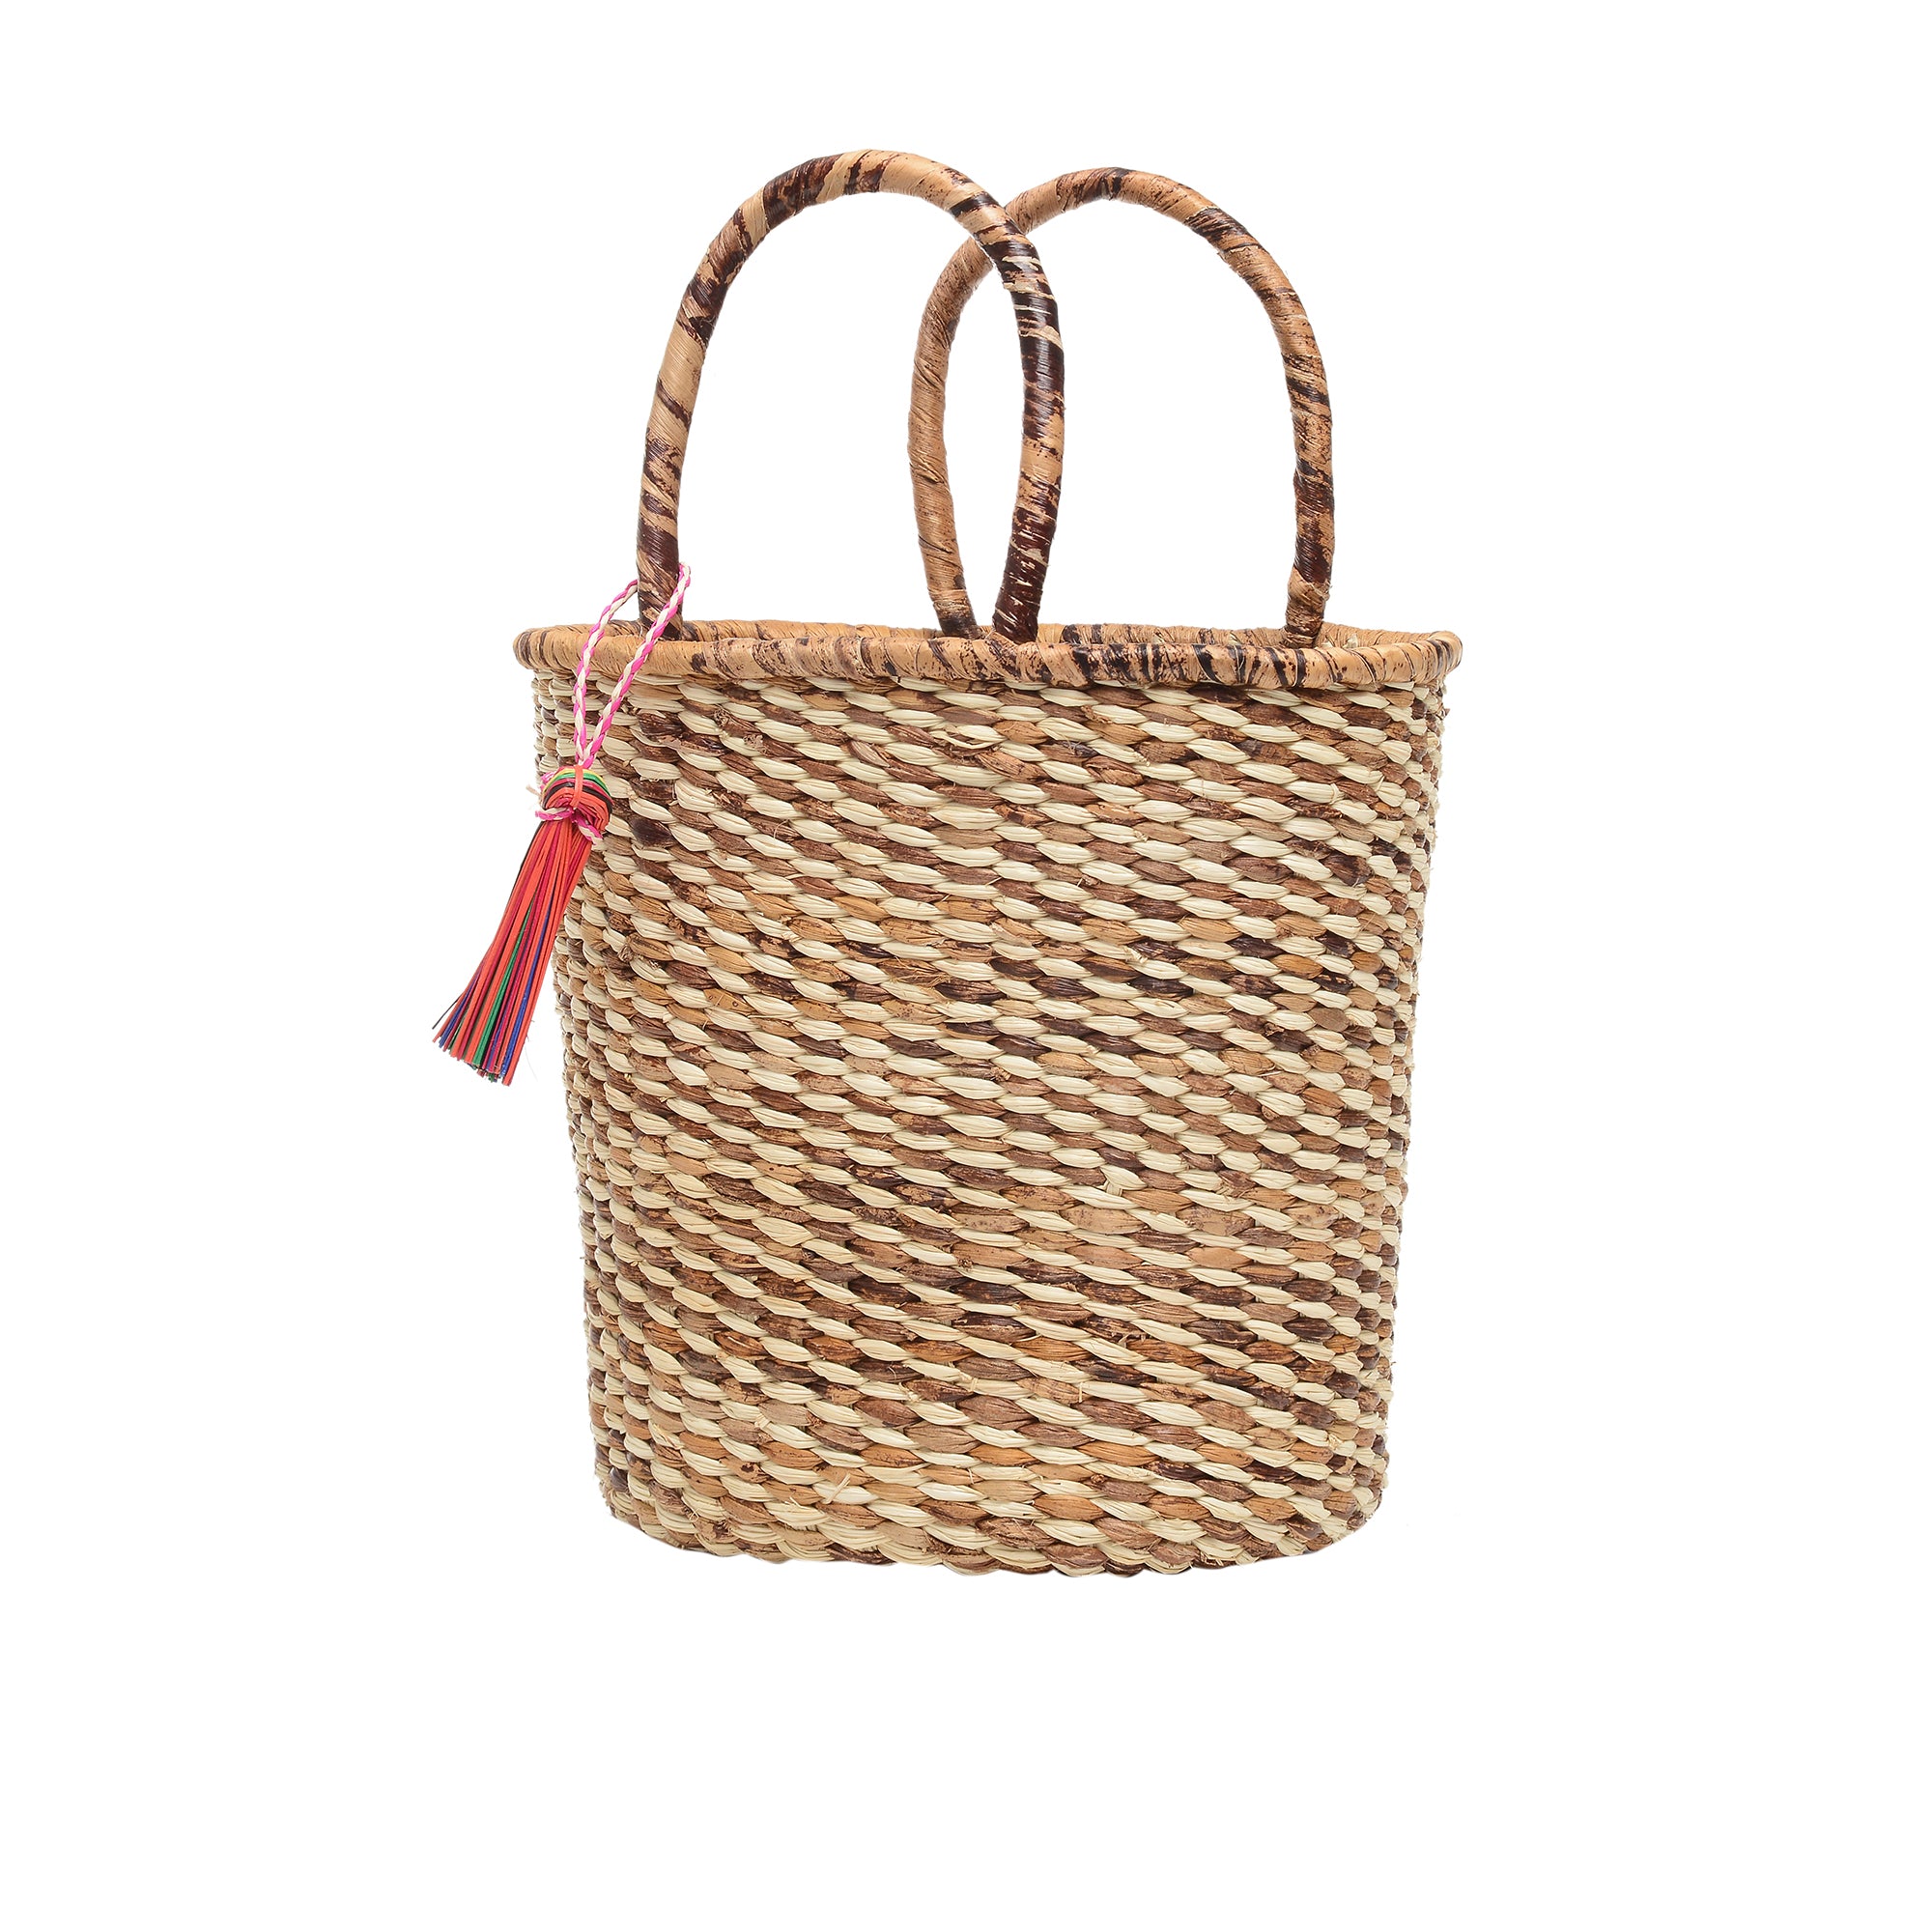 Oval woven basket bag